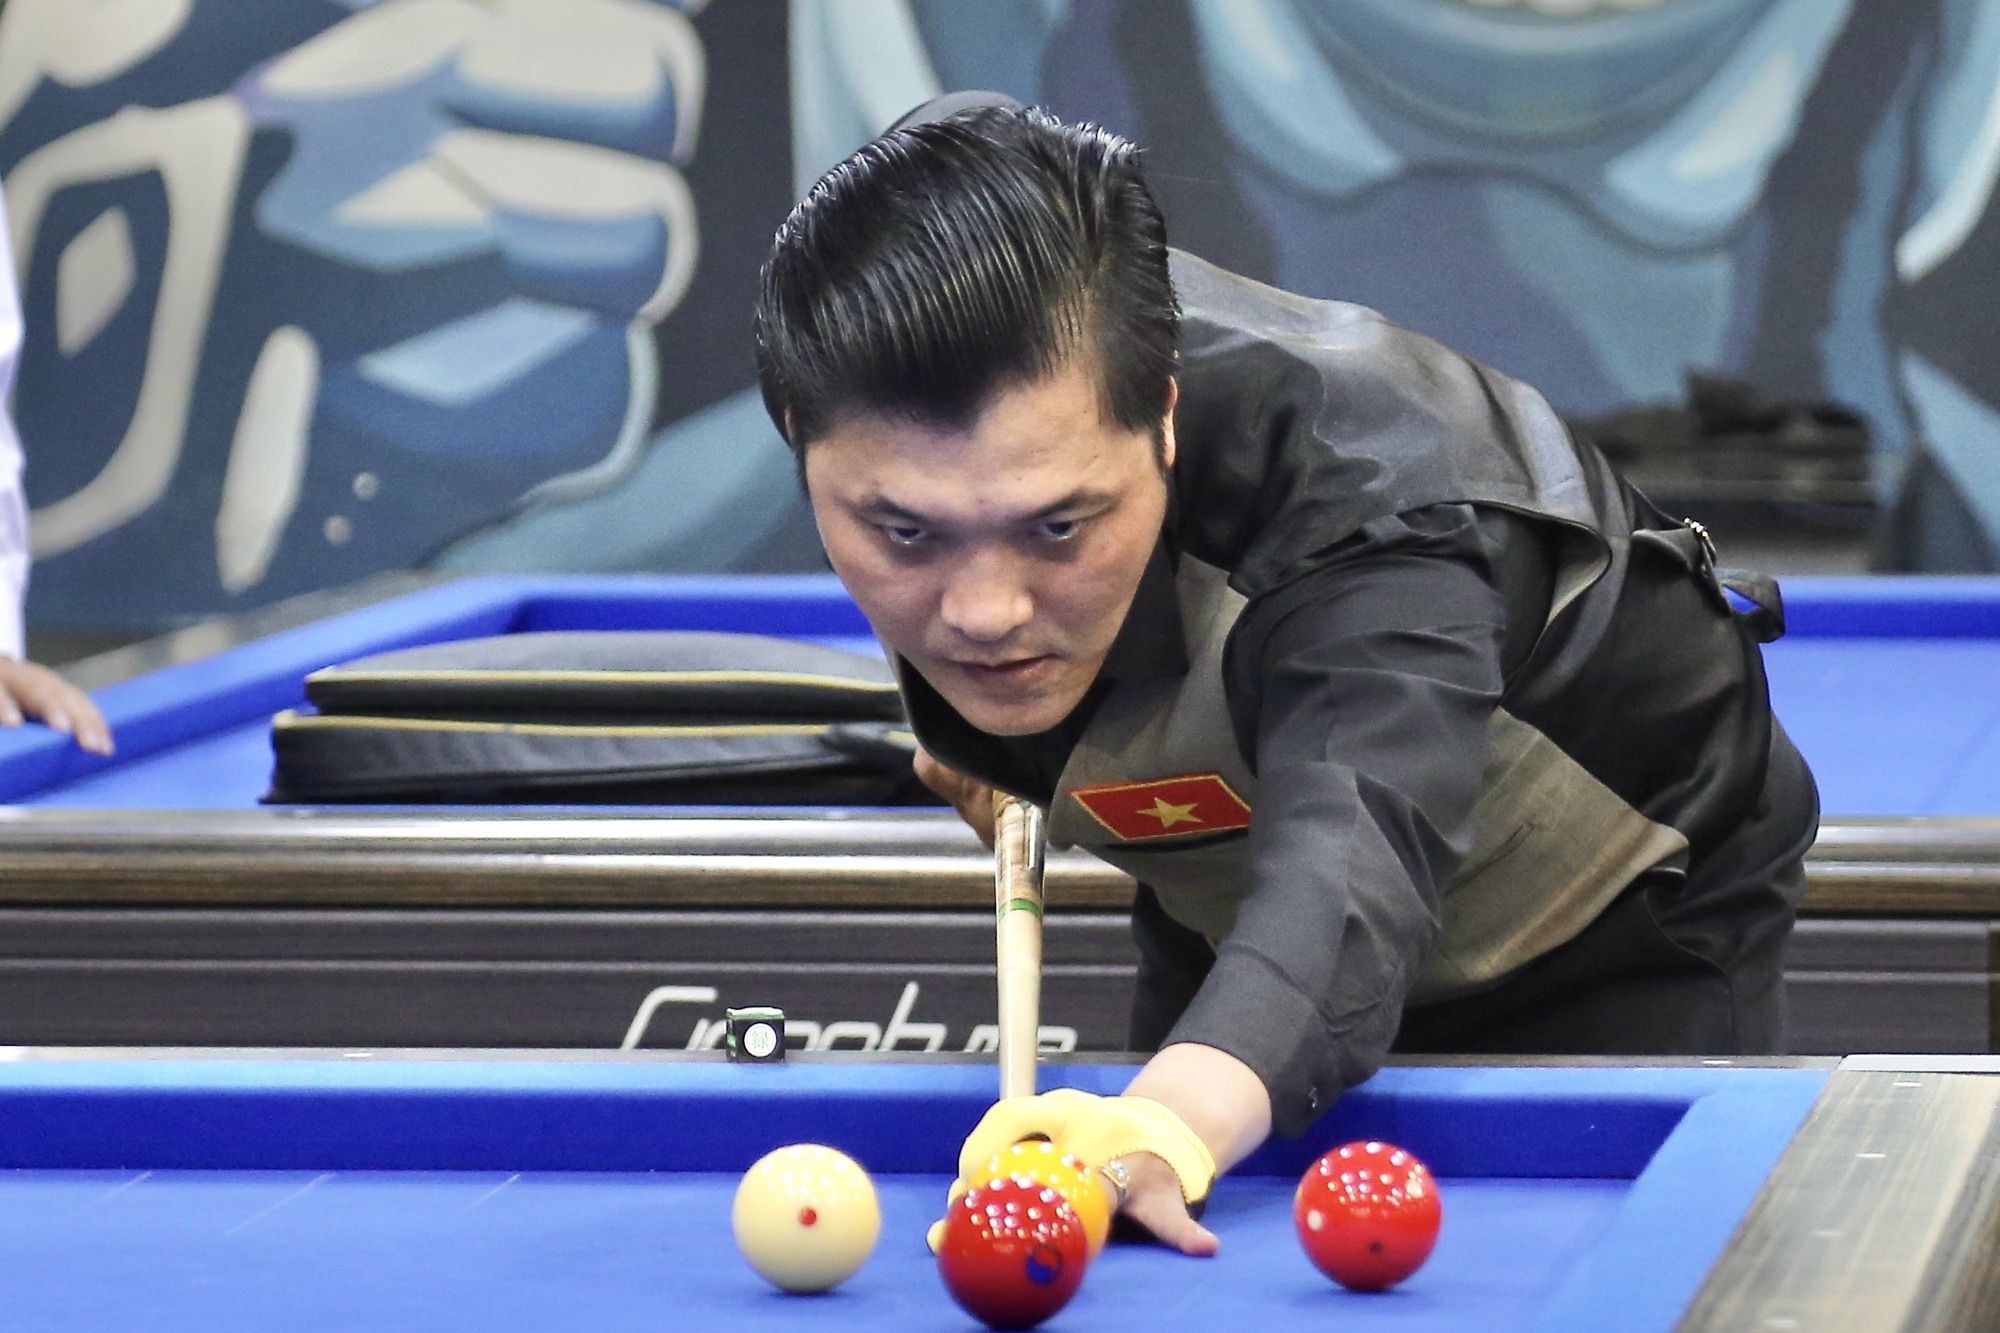 “Phù thủy Billiards” Thịnh Kent tổ chức giải đấu độc nhất vô nhị - Ảnh 3.